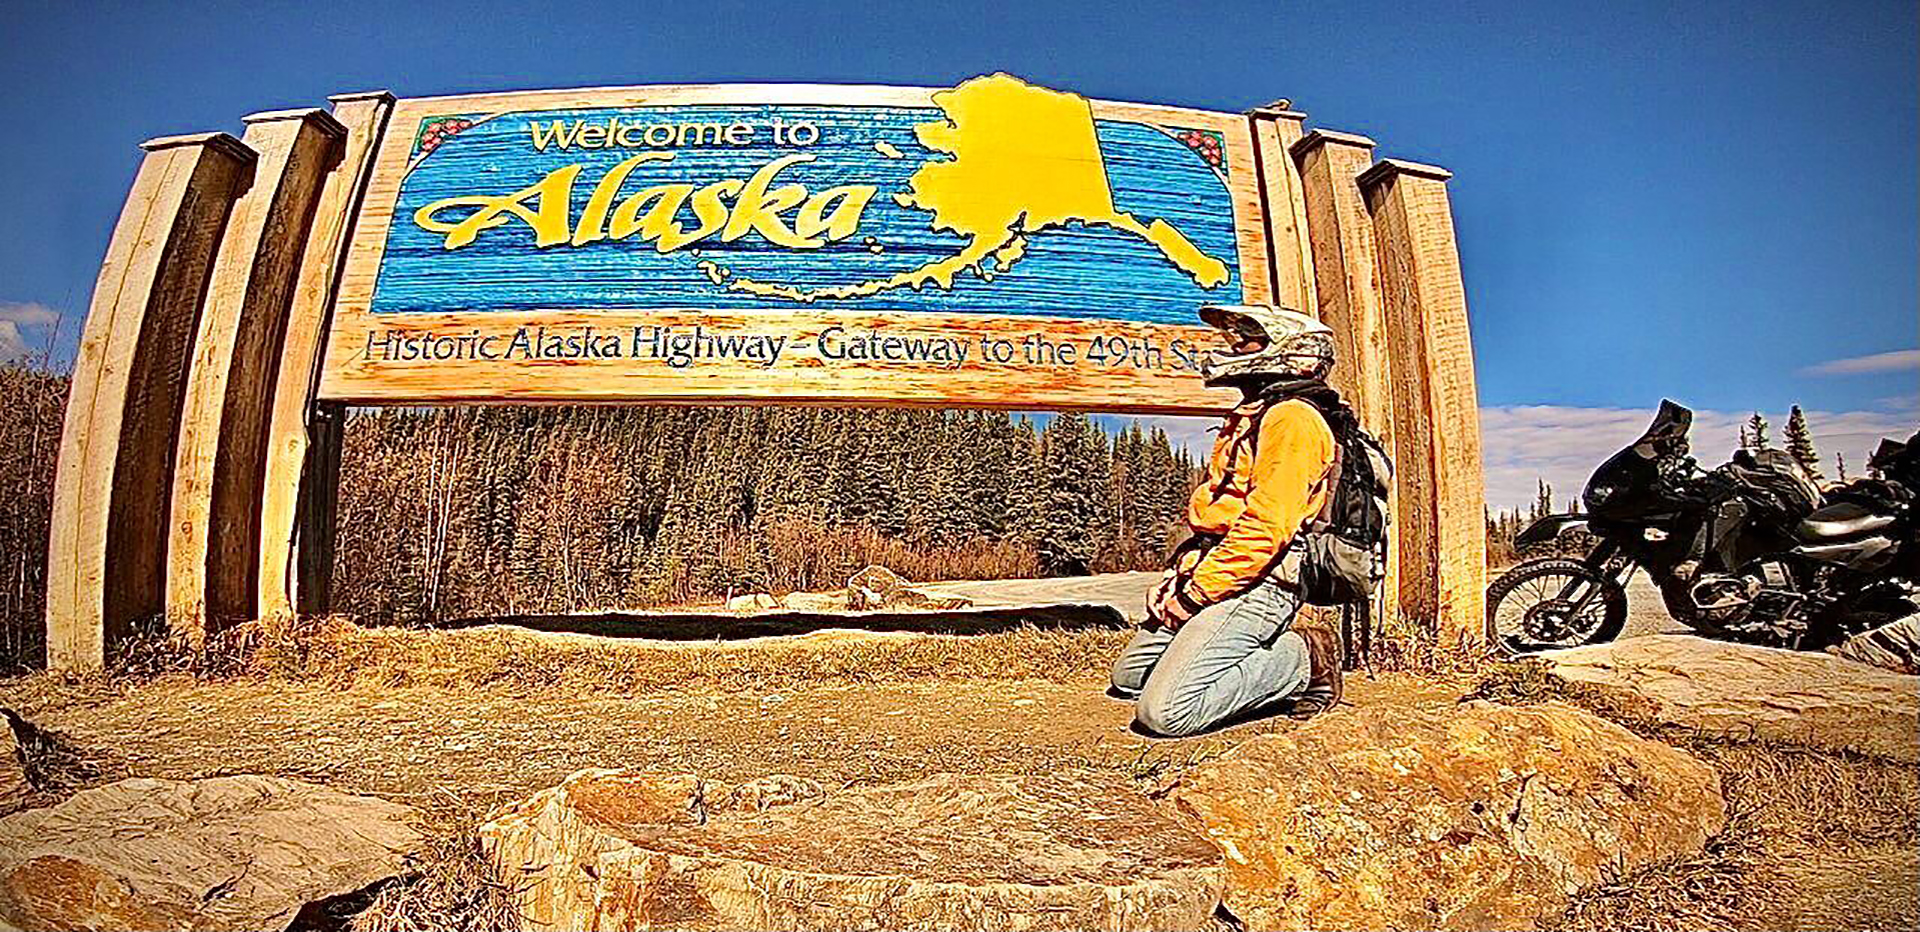 La llegada a Alaska. La meca de Diego Saad, donde arribó luego de viajar cinco años (@por.la.carretera)